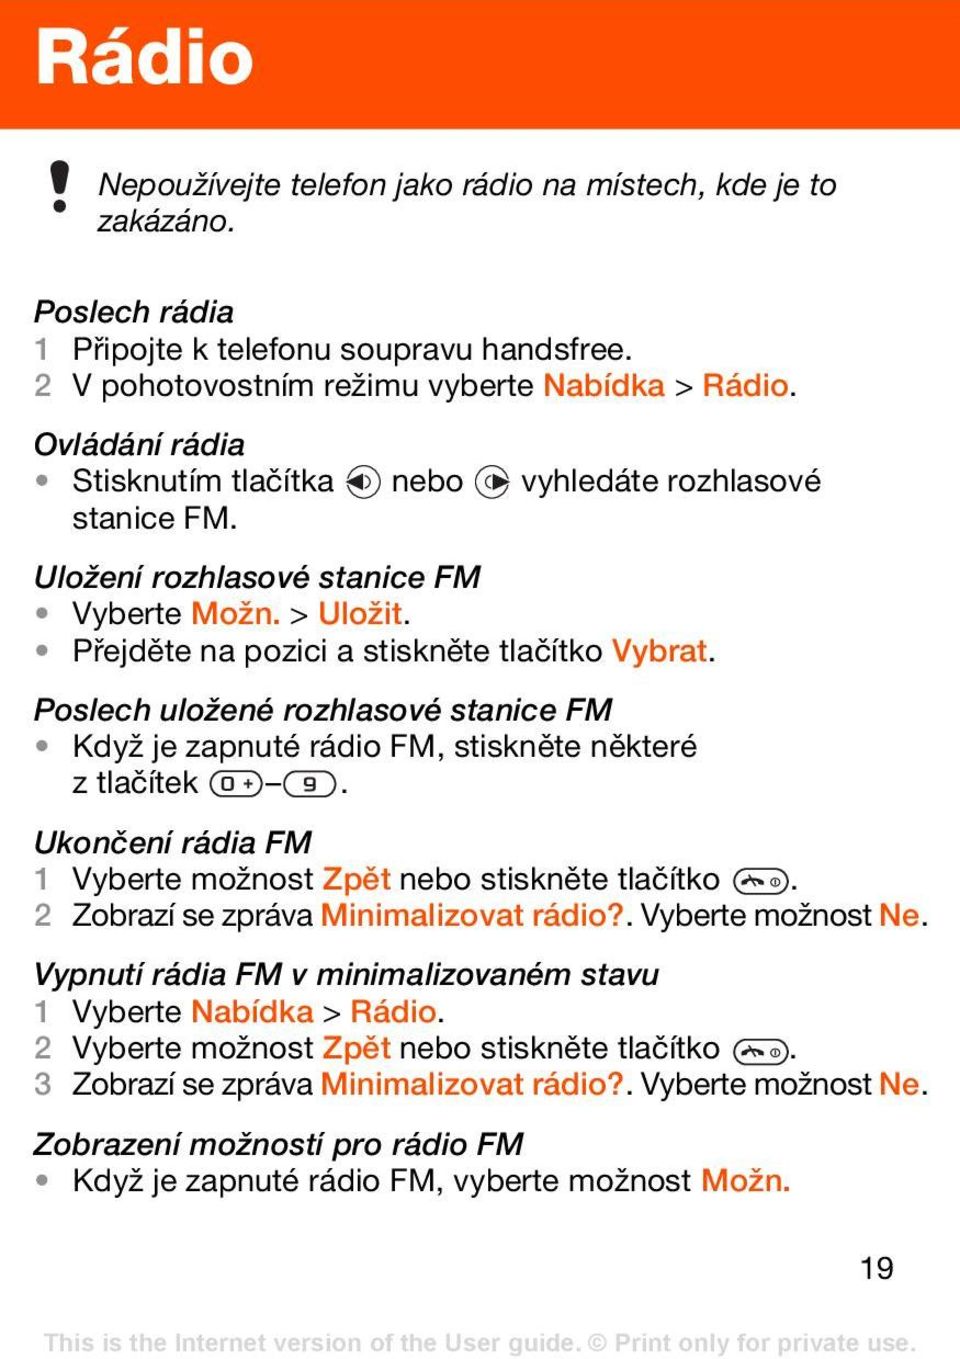 Poslech uložené rozhlasové stanice FM Když je zapnuté rádio FM, stiskněte některé ztlačítek. Ukončení rádia FM 1 Vyberte možnost Zpět nebo stiskněte tlačítko. 2 Zobrazí se zpráva Minimalizovat rádio?